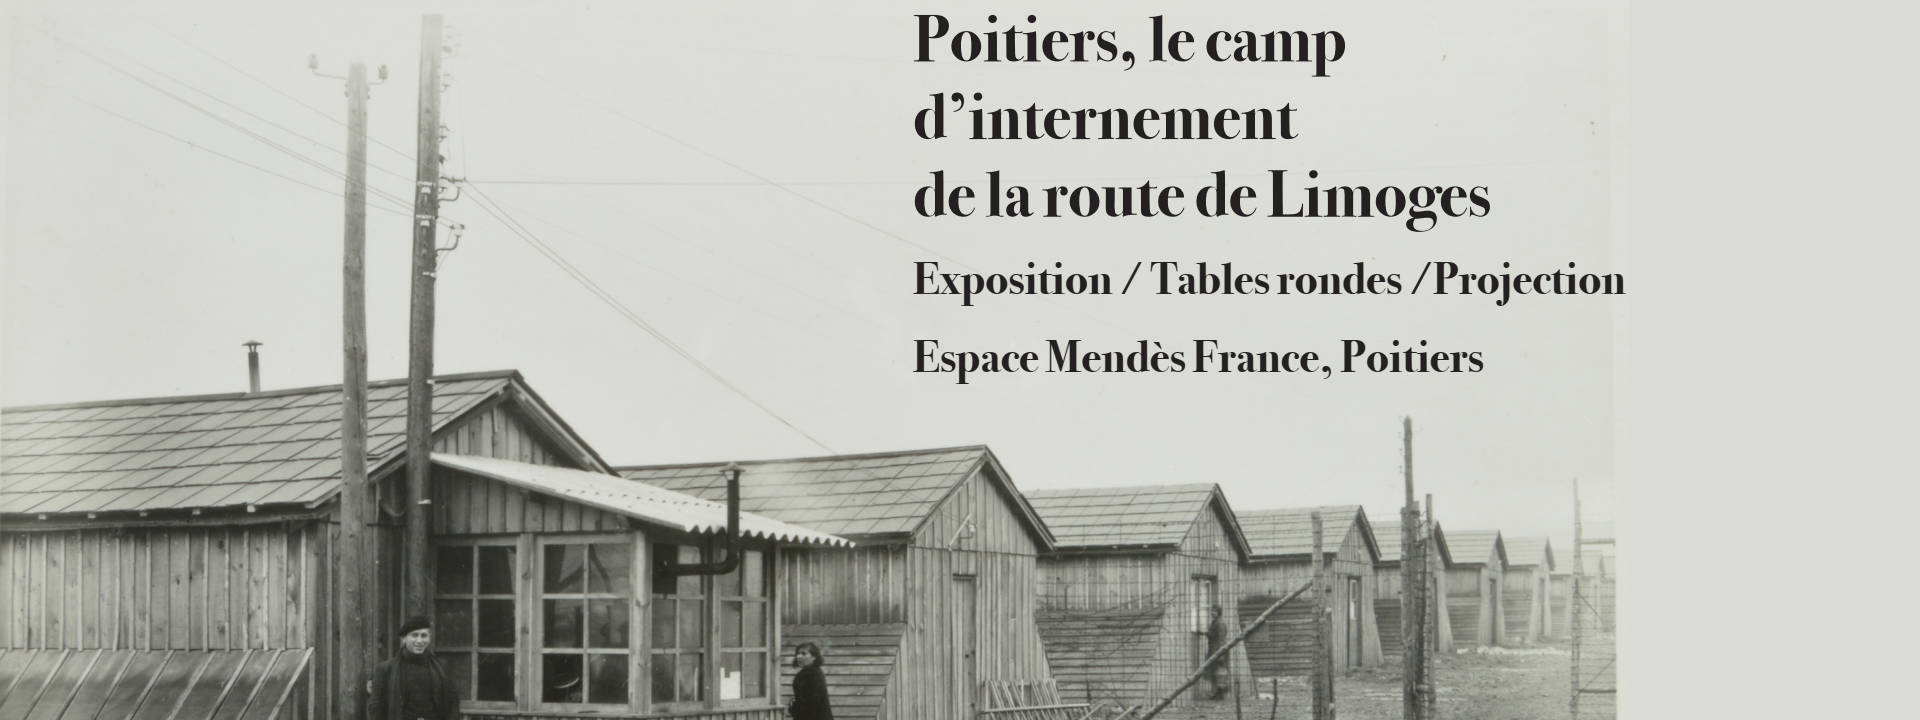 Poitiers, le camp d'internement de la route de Limoges (1939-1945)